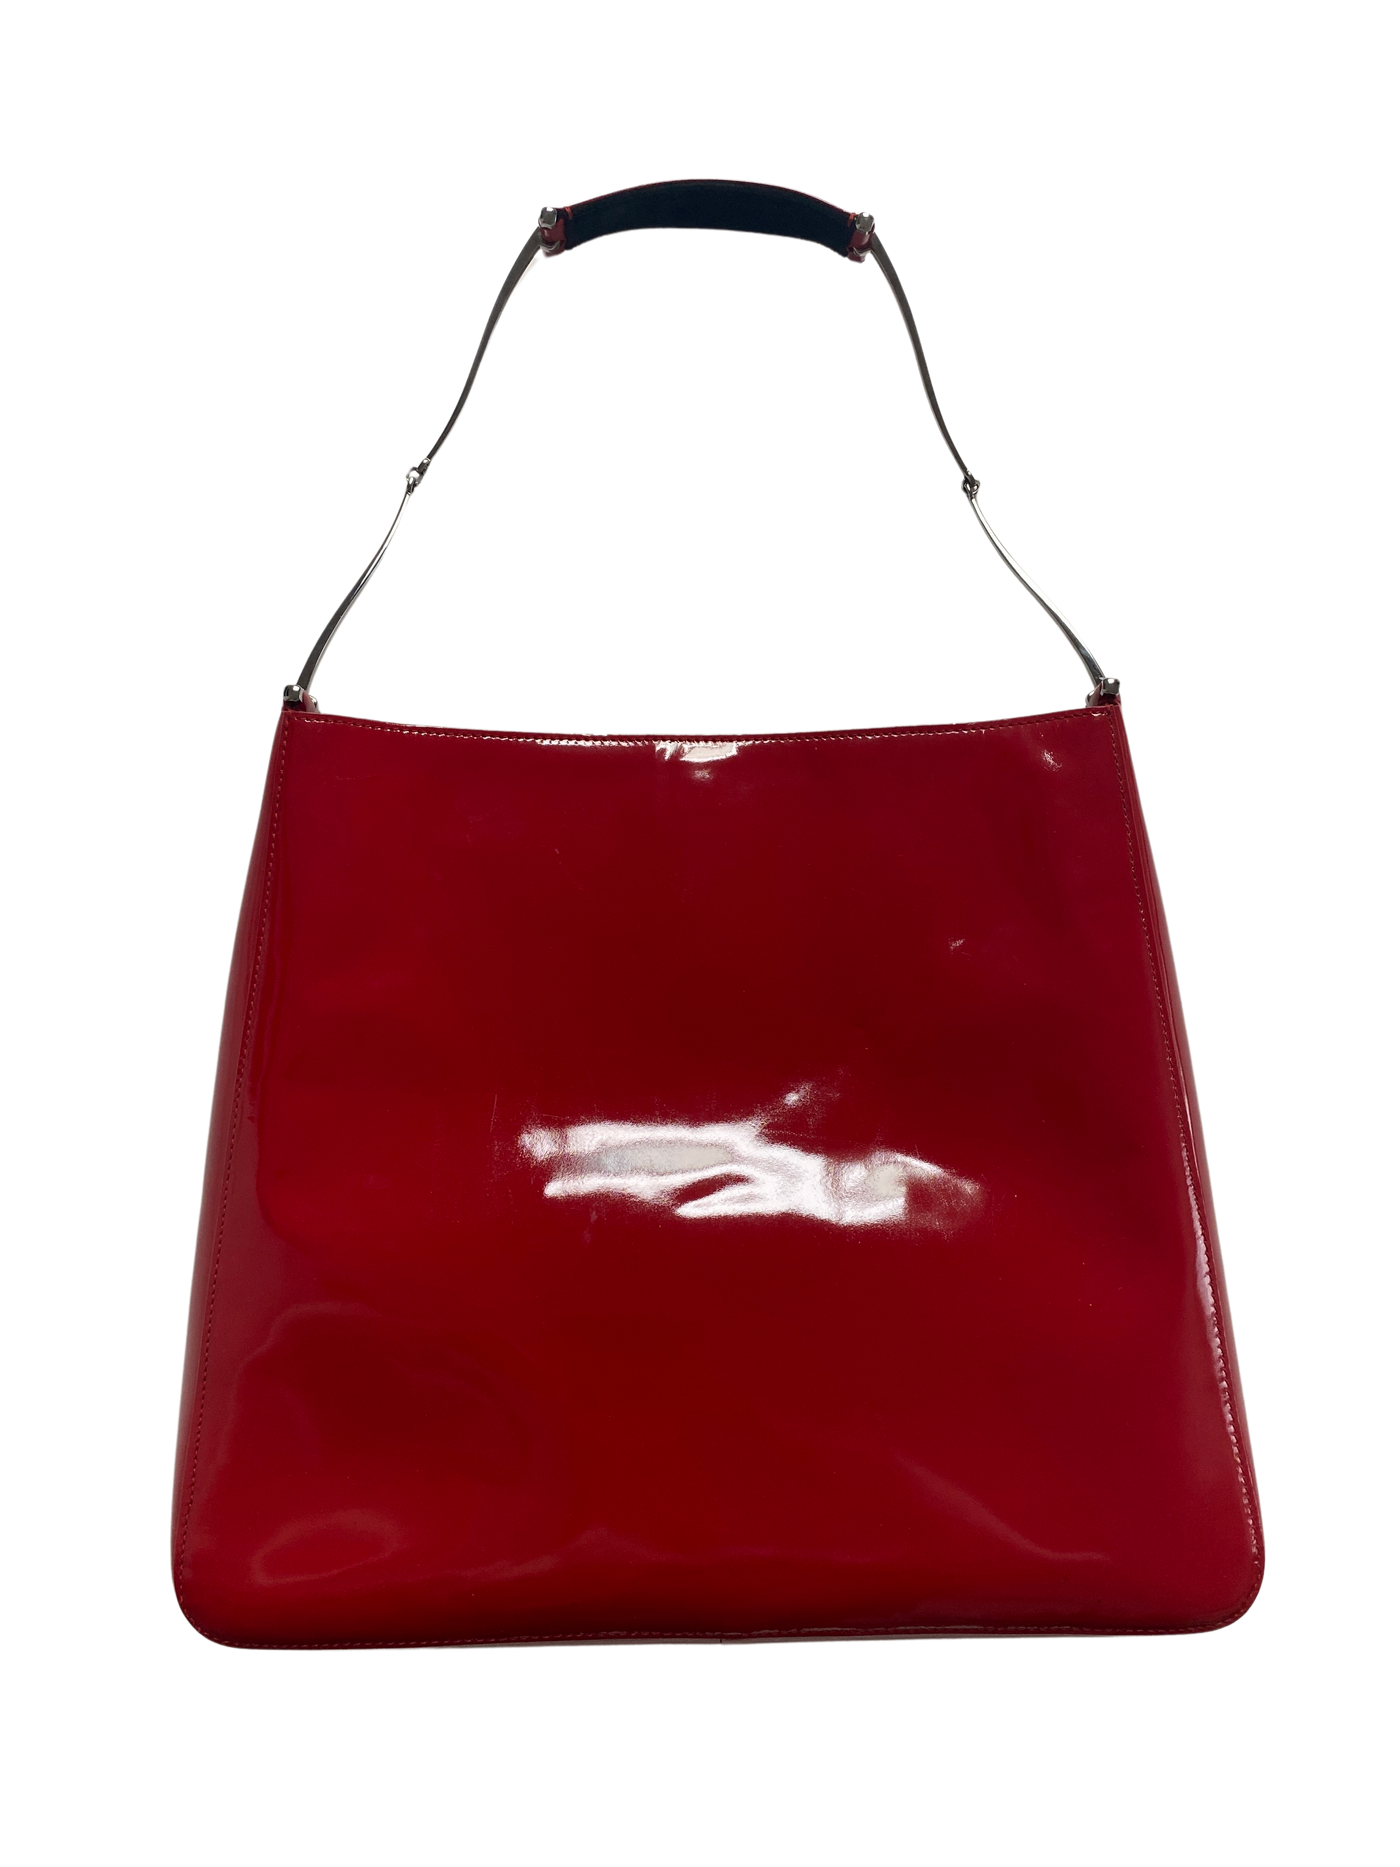 Gucci Red Horsebit Bag